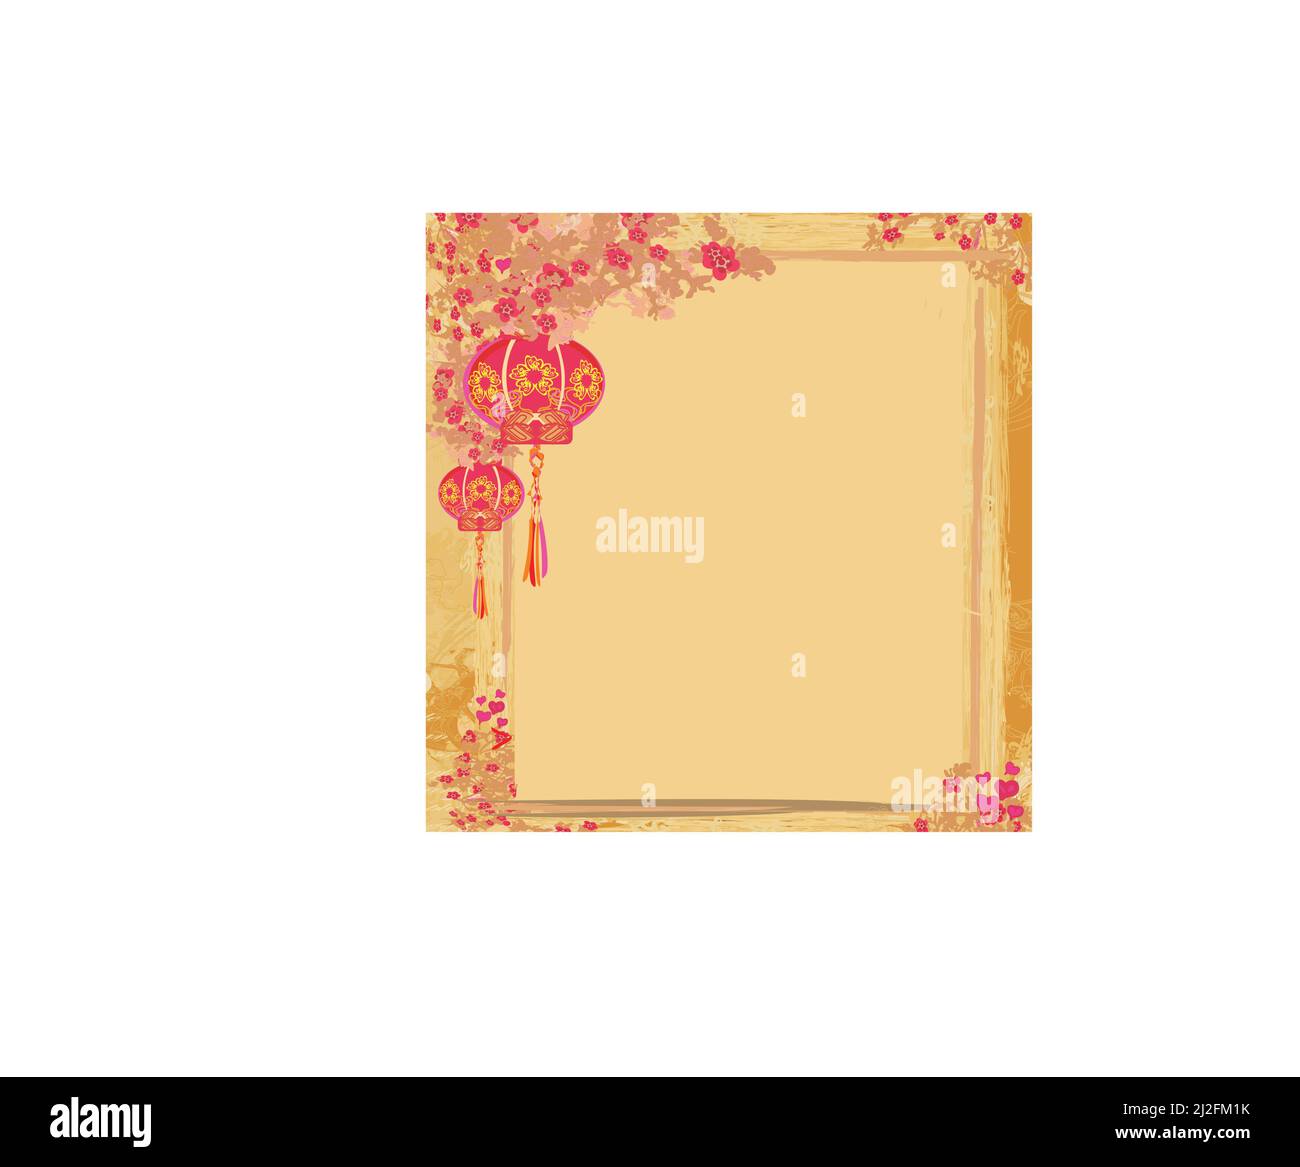 Lanternes vous apportera la paix et bonne chance à la prière au cours de la fête du Nouvel An chinois Illustration de Vecteur